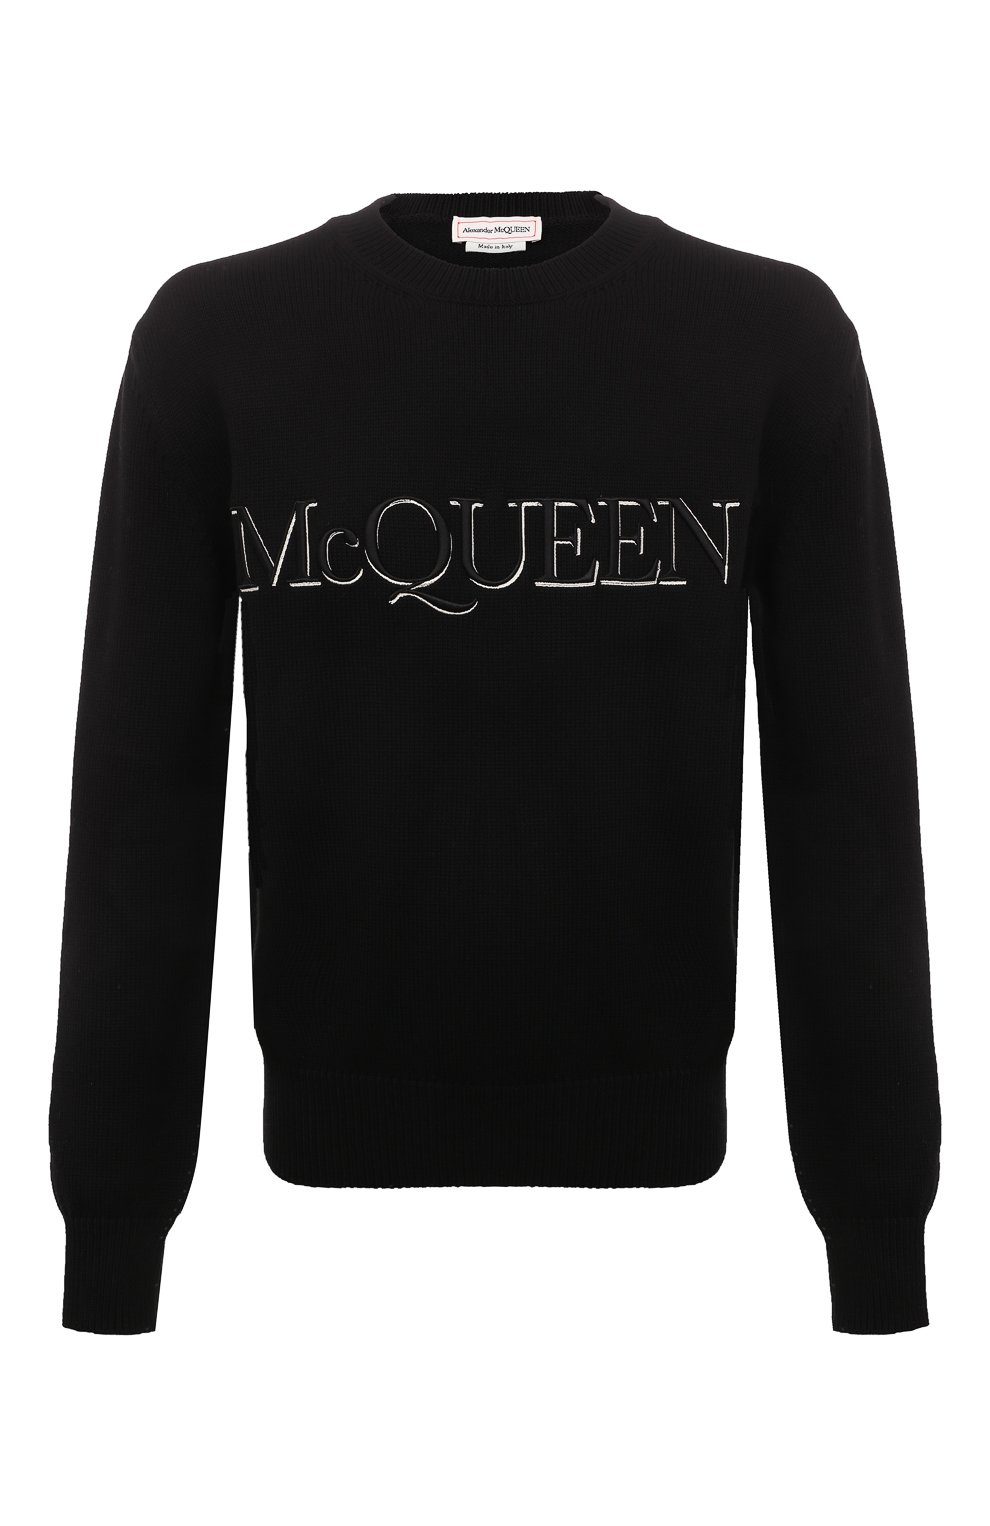 Свитеры Alexander McQueen, Хлопковый свитер Alexander McQueen, Италия, Чёрный, Хлопок: 100%;, 13223302  - купить